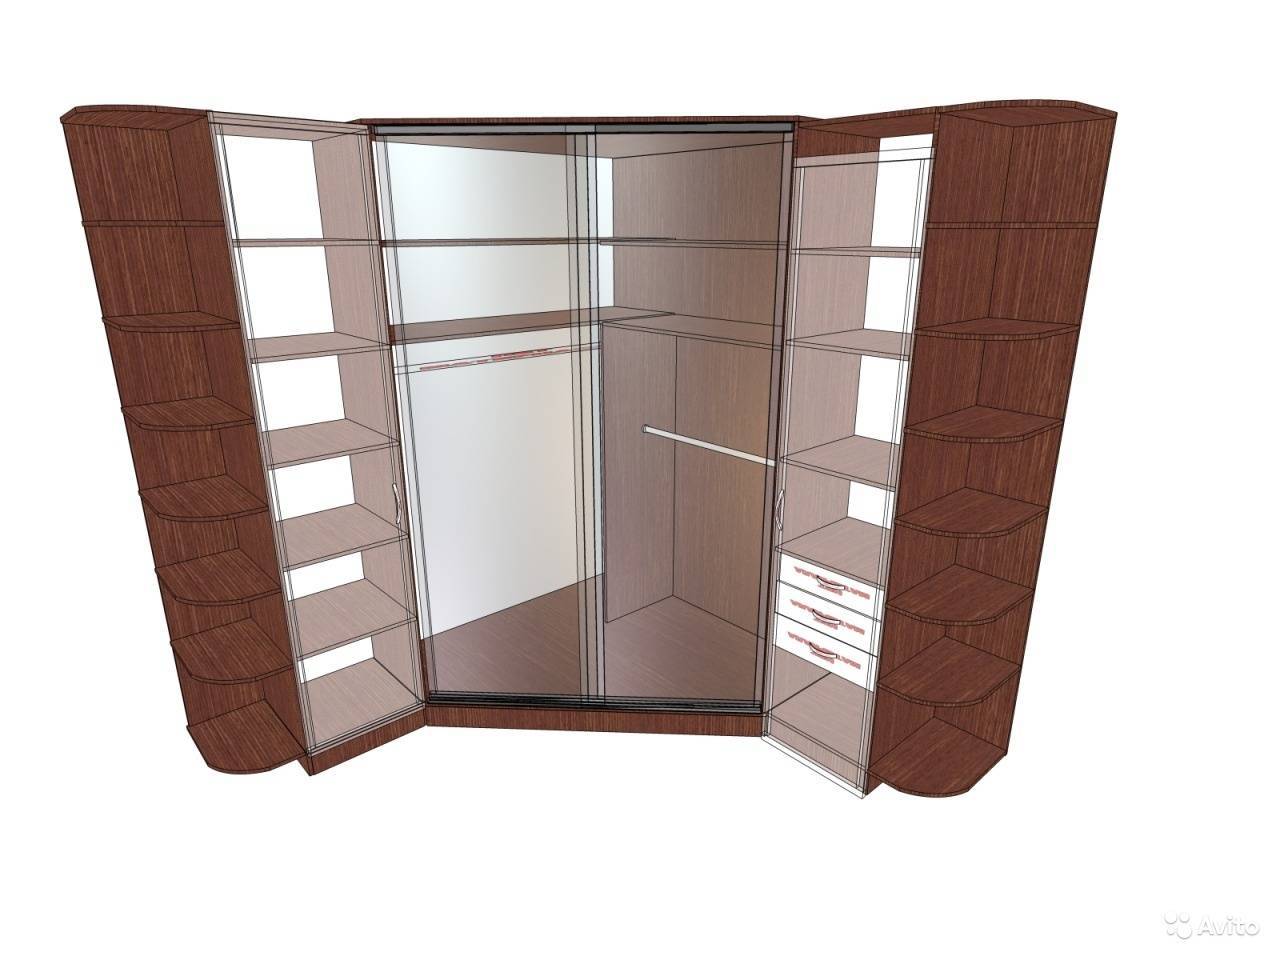 Планировка шкафа-купе (37 фото): внутри с размерами, схемы, варианты встроенные в прихожую, для спальни, программы и онлайн-конструкторы